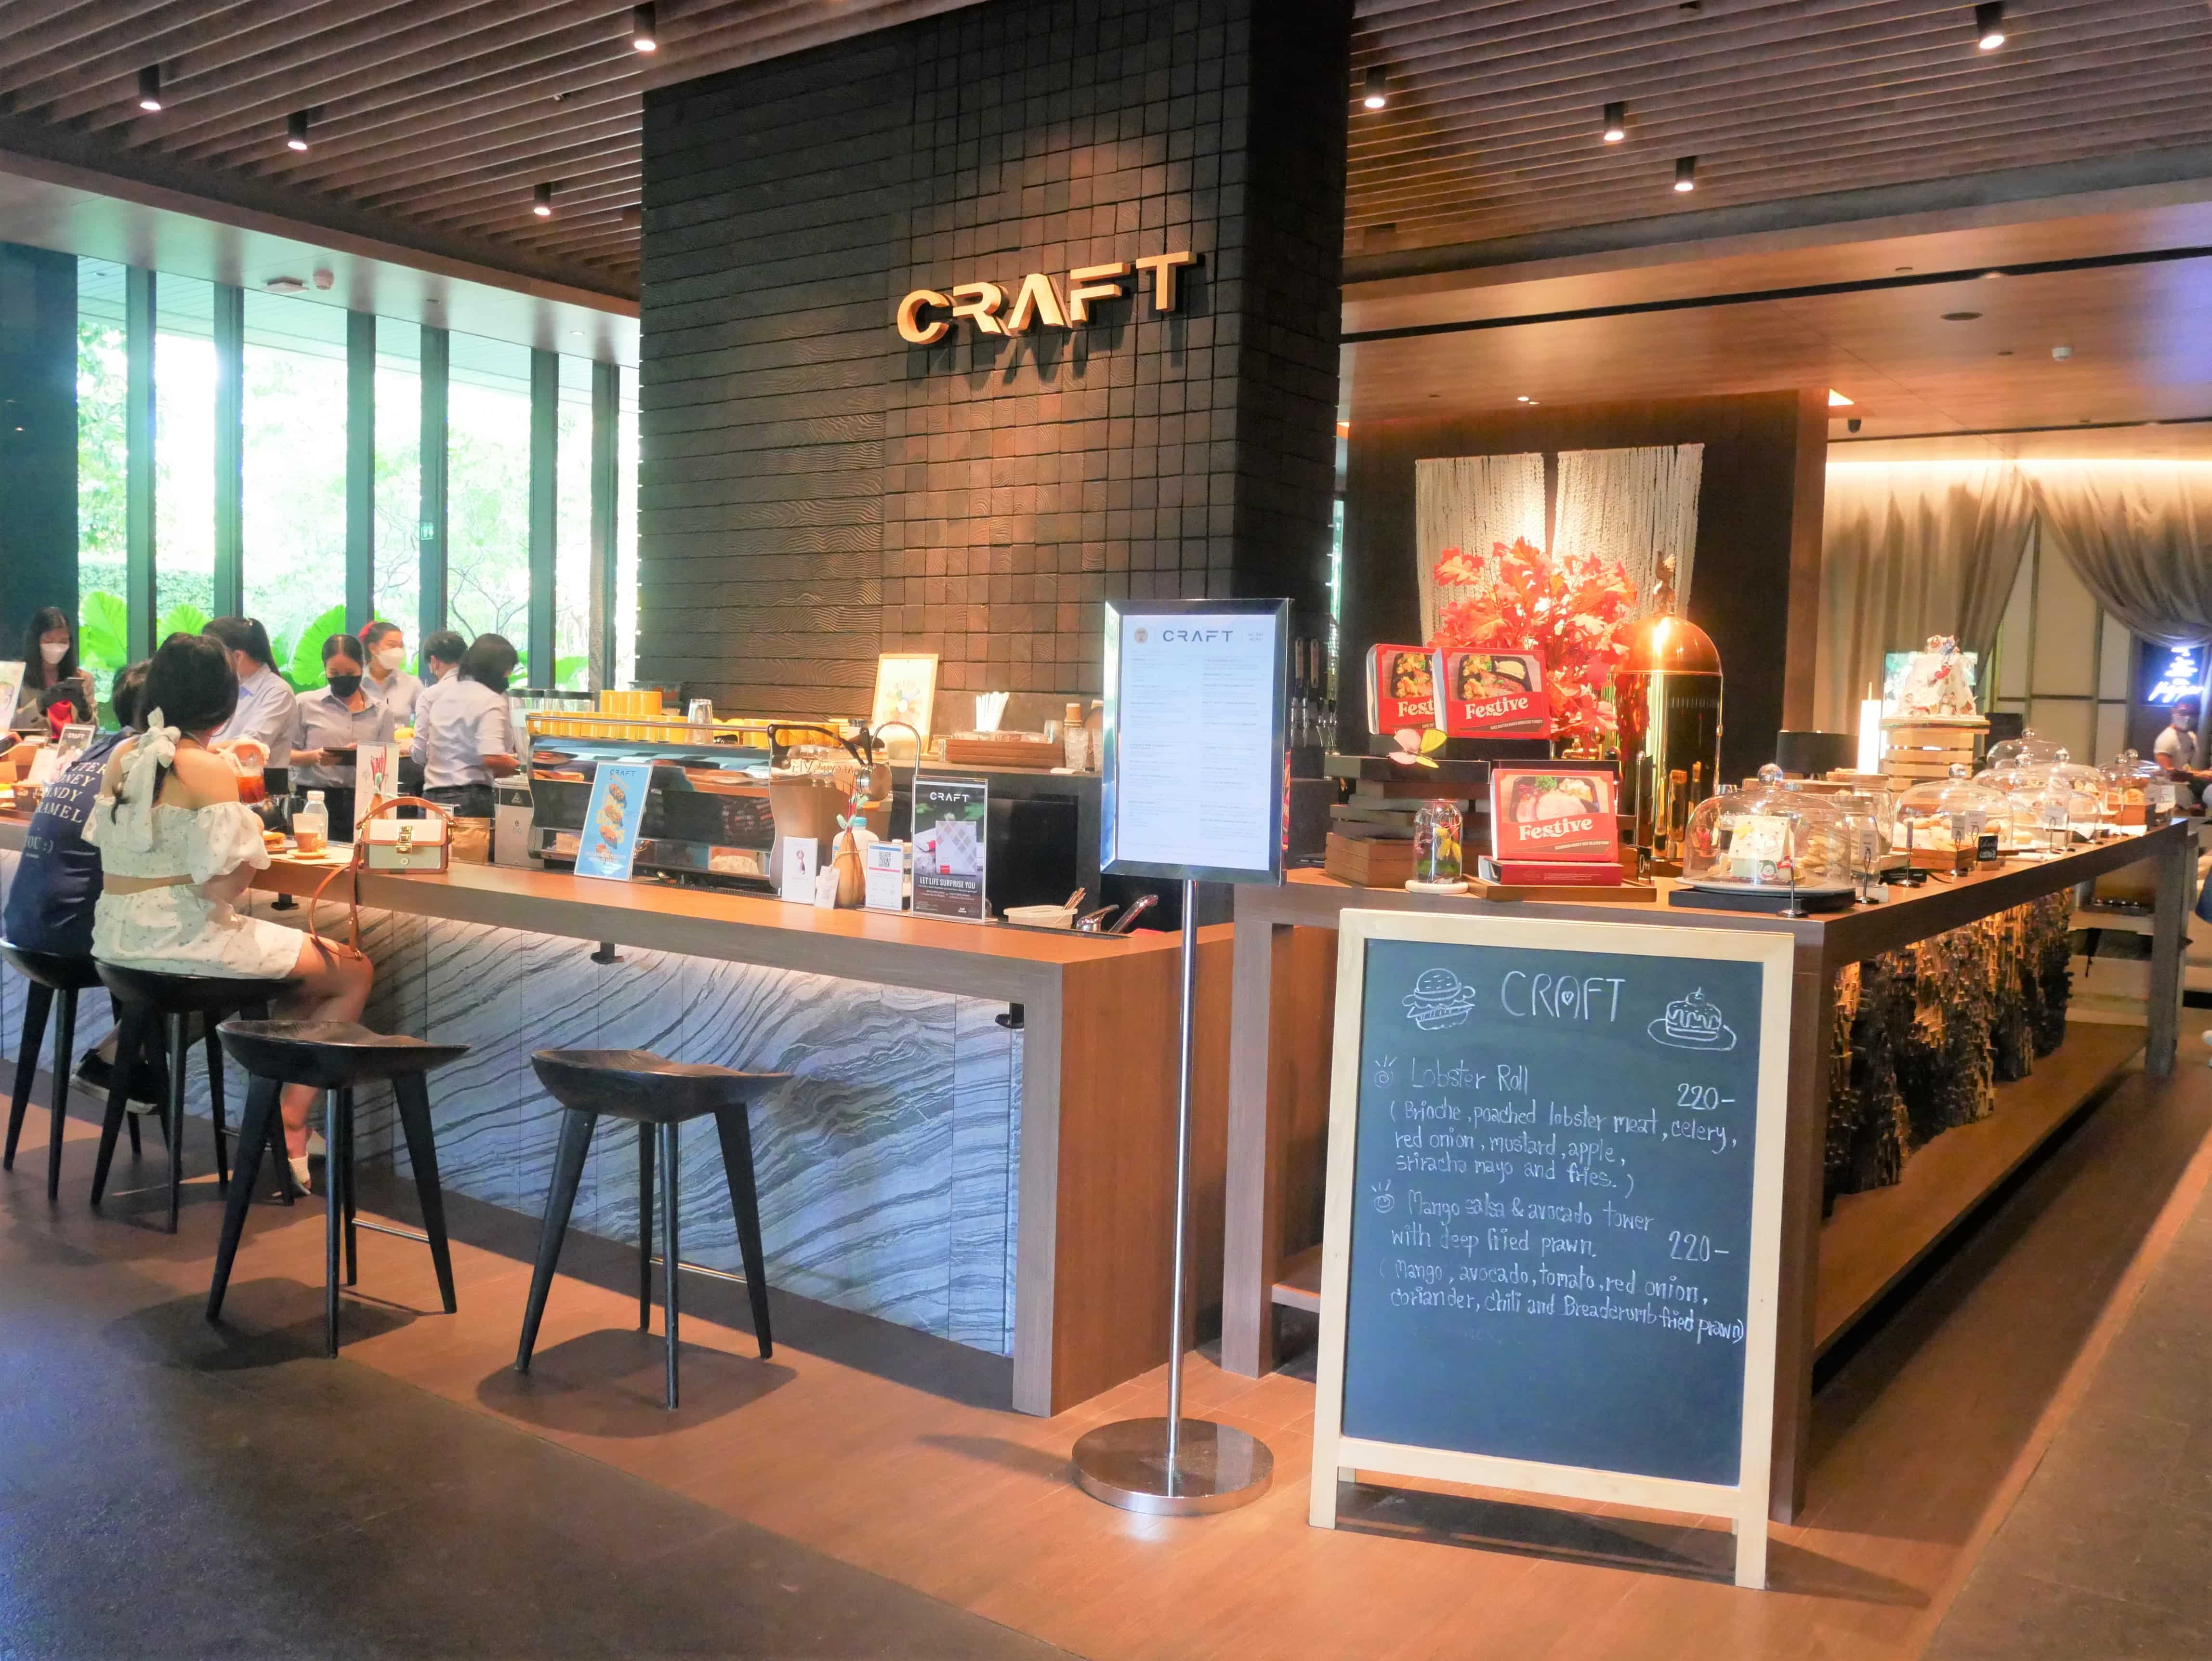 【CRAFT】「キンプトンマーライバンコク」内の緑豊かな自然に癒されるおしゃれなカフェ